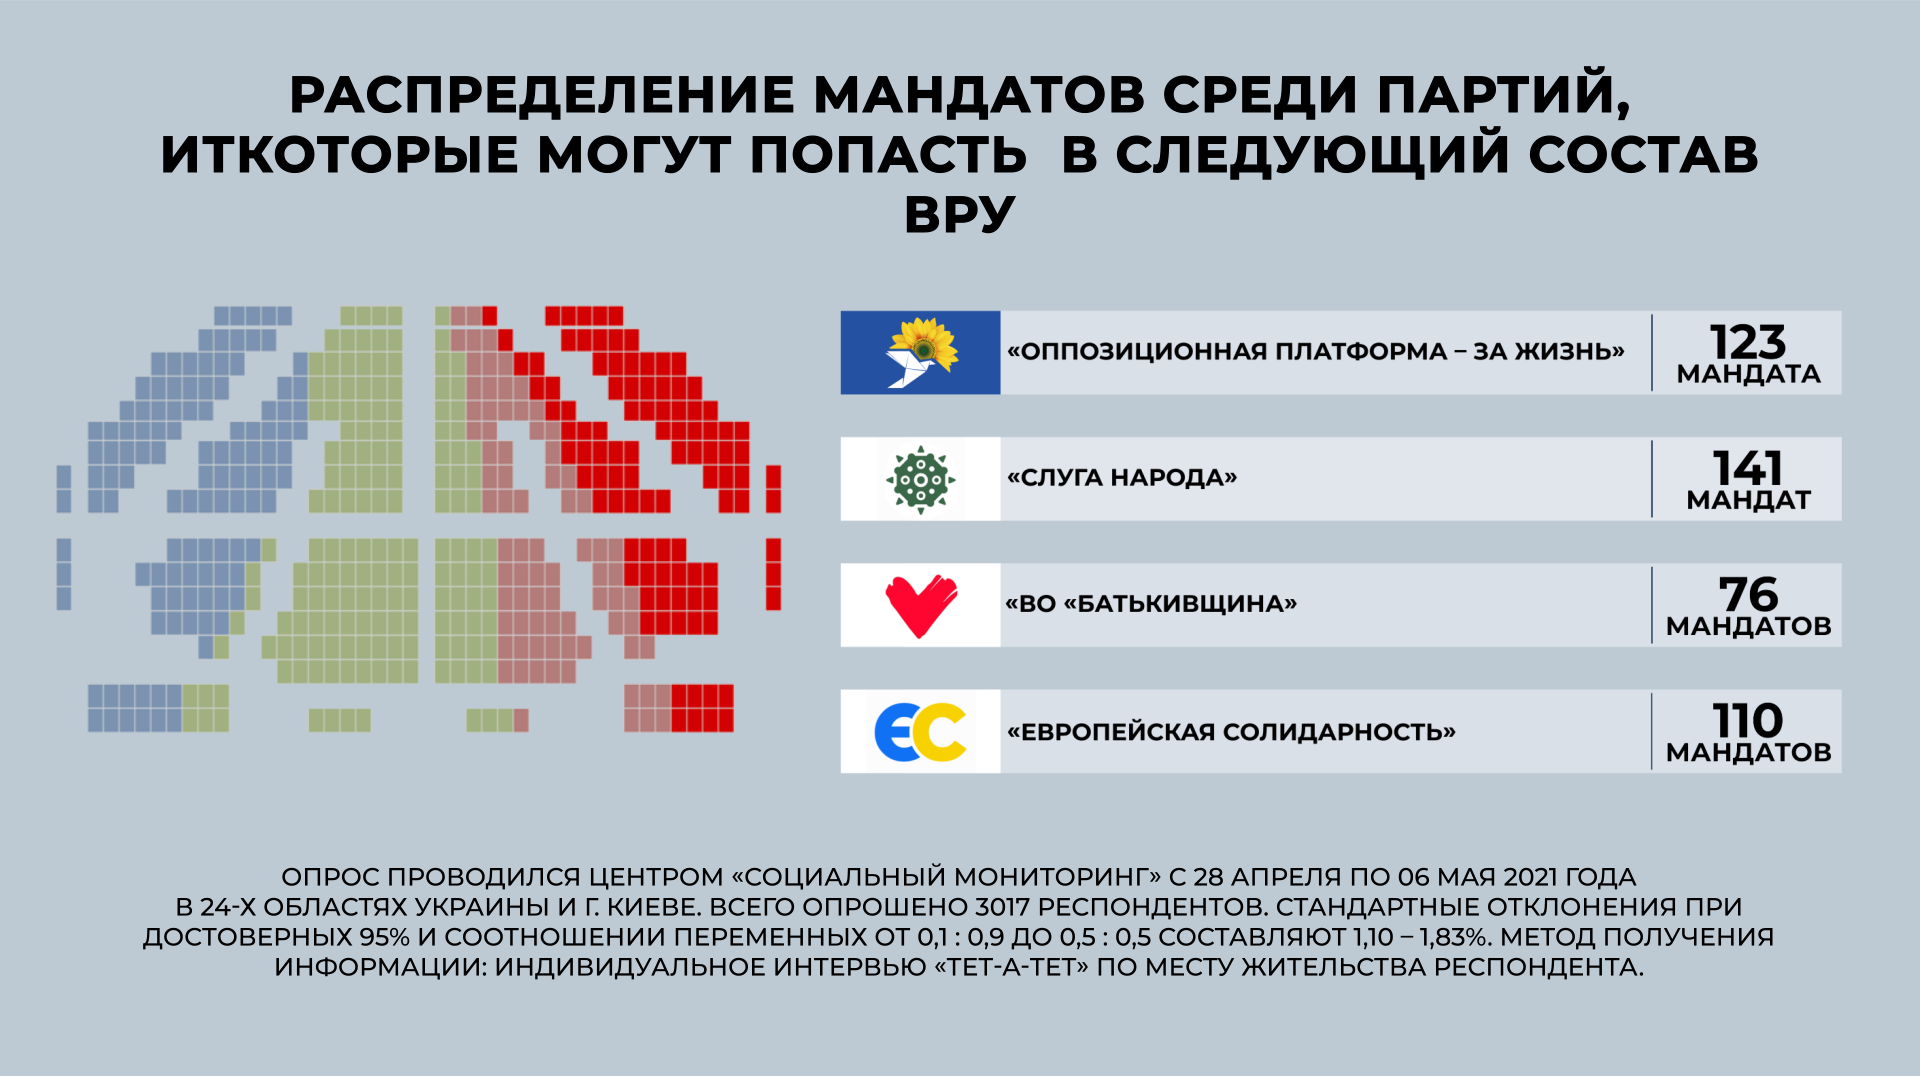 МАндаты, которые получили бы партии. Фото: https://smc.org.ua